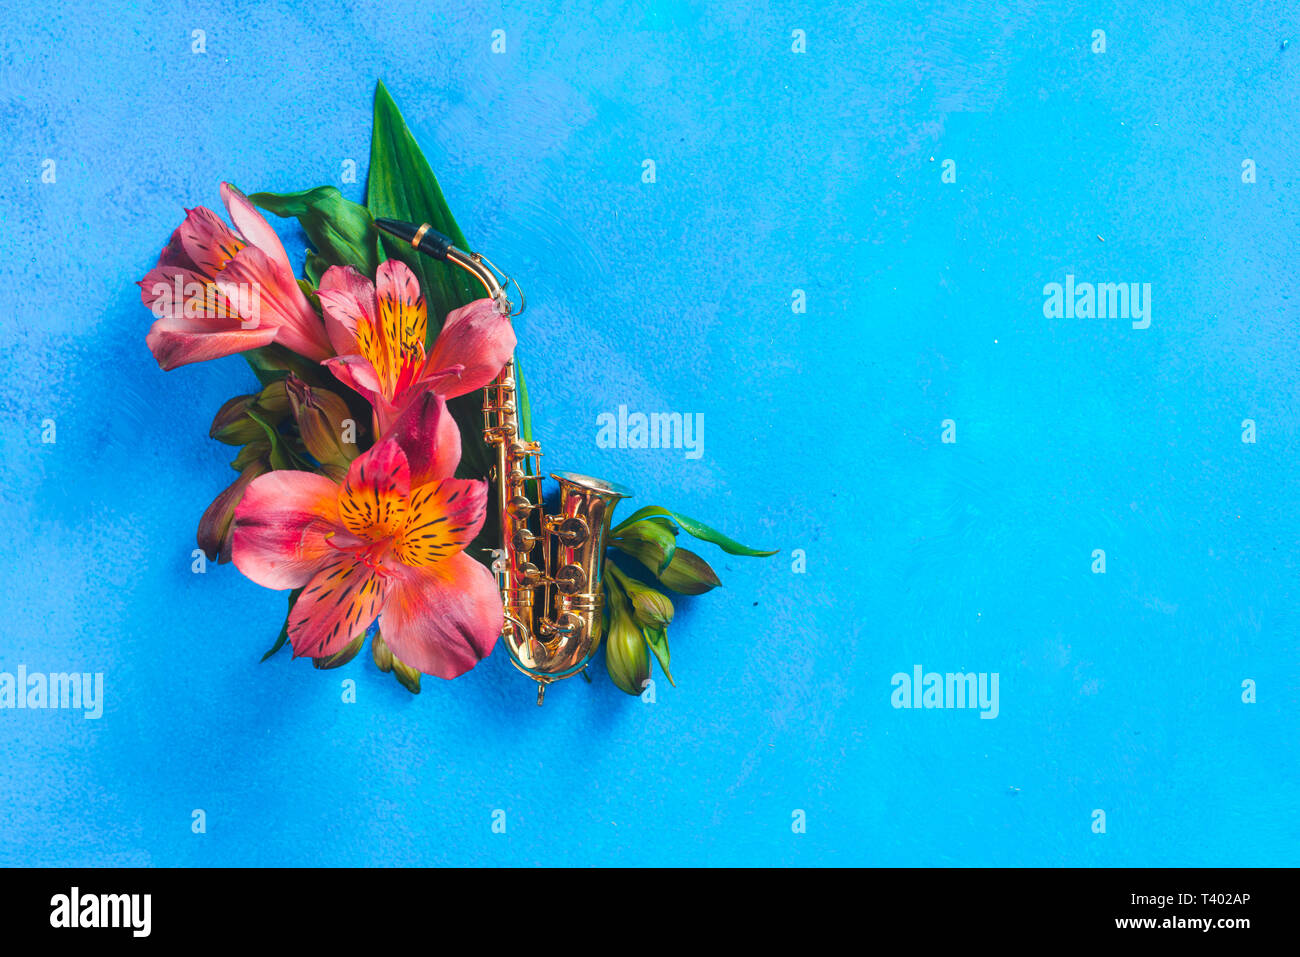 Winzige Saxophon mit Feder alstroemeria Blumen auf einem blauen Hintergrund mit kopieren. Frühling oder Sommer musikalische Festival Konzept mit Kopie Raum Stockfoto